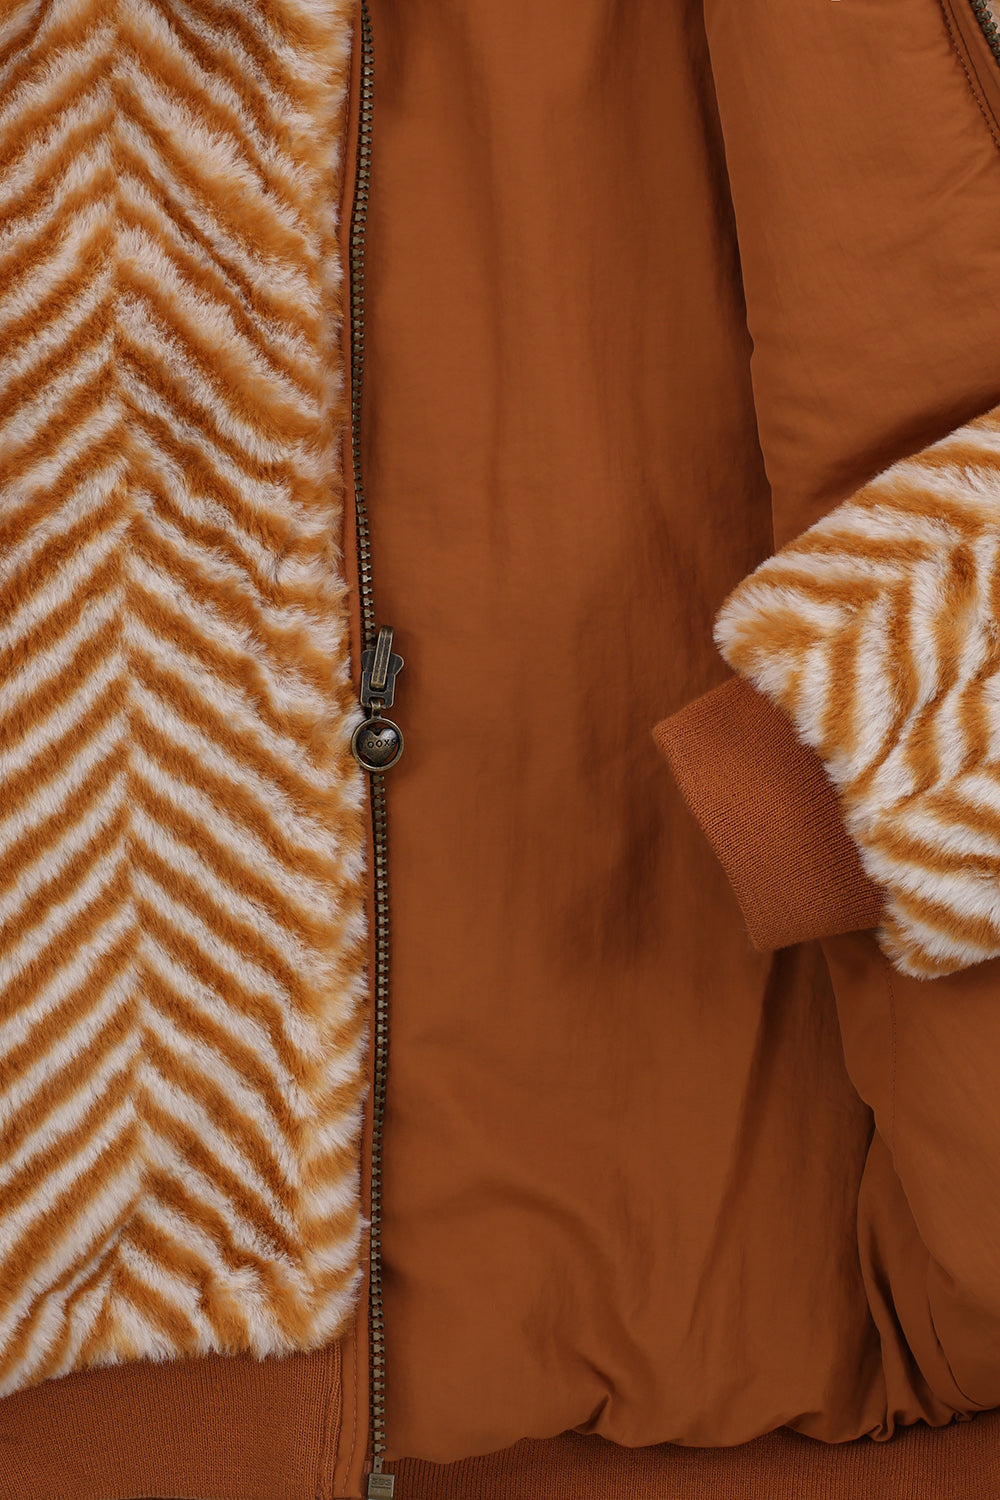 Meisjes Reversible Fur Jacket van Looxs Little in de kleur Cinnamon in maat 128.